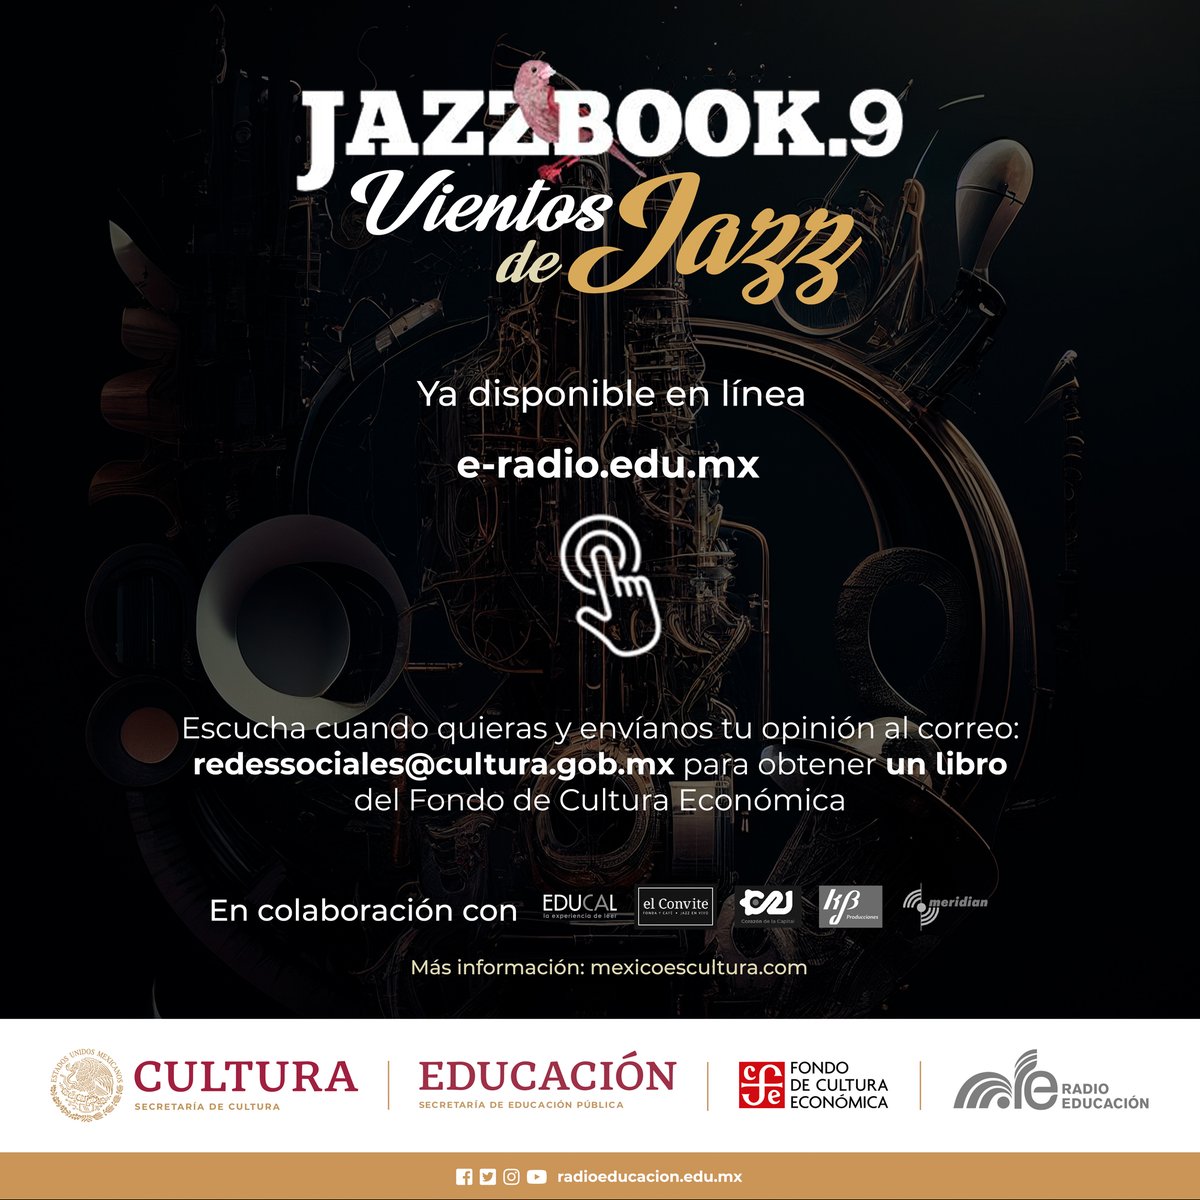 Escucha cuando quieras todas las temporadas de #Jazzbook #VientosDeJazz y gánate un libro 🎶📚 🎧 Visita e-radio.edu.mx/Jazzbook y envíanos tu opinión al correo redessociales@cultura.gob.mx para obtener un libro del @FCEMexico @LibreriasEducal @Capital_21 @elconvite